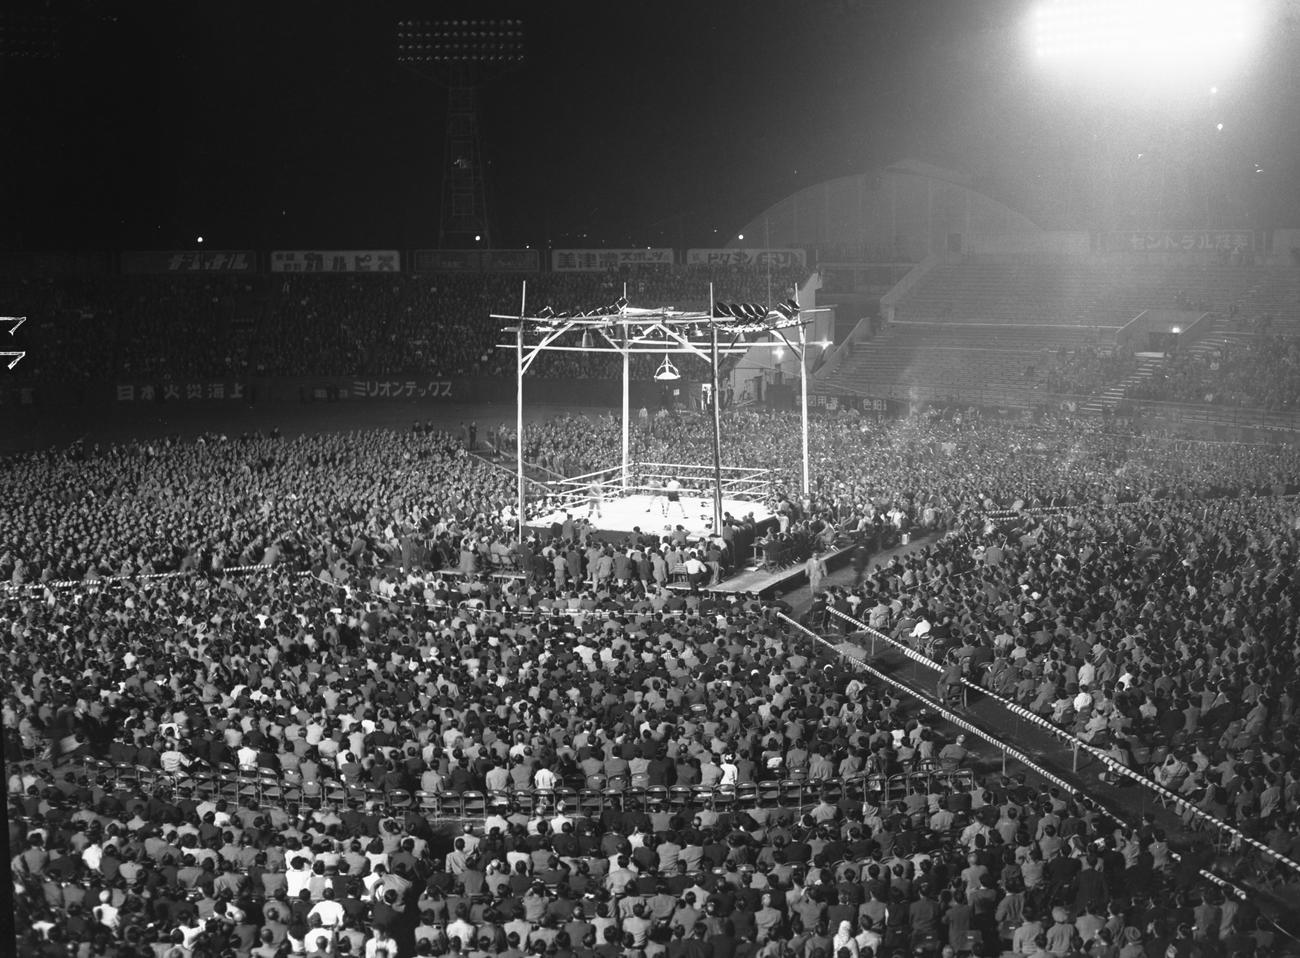 52年5月、ダド・マリノ対白井義男の世界フライ級選手権が行われた後楽園球場仮設リングを4万5000人の観衆が囲んだ